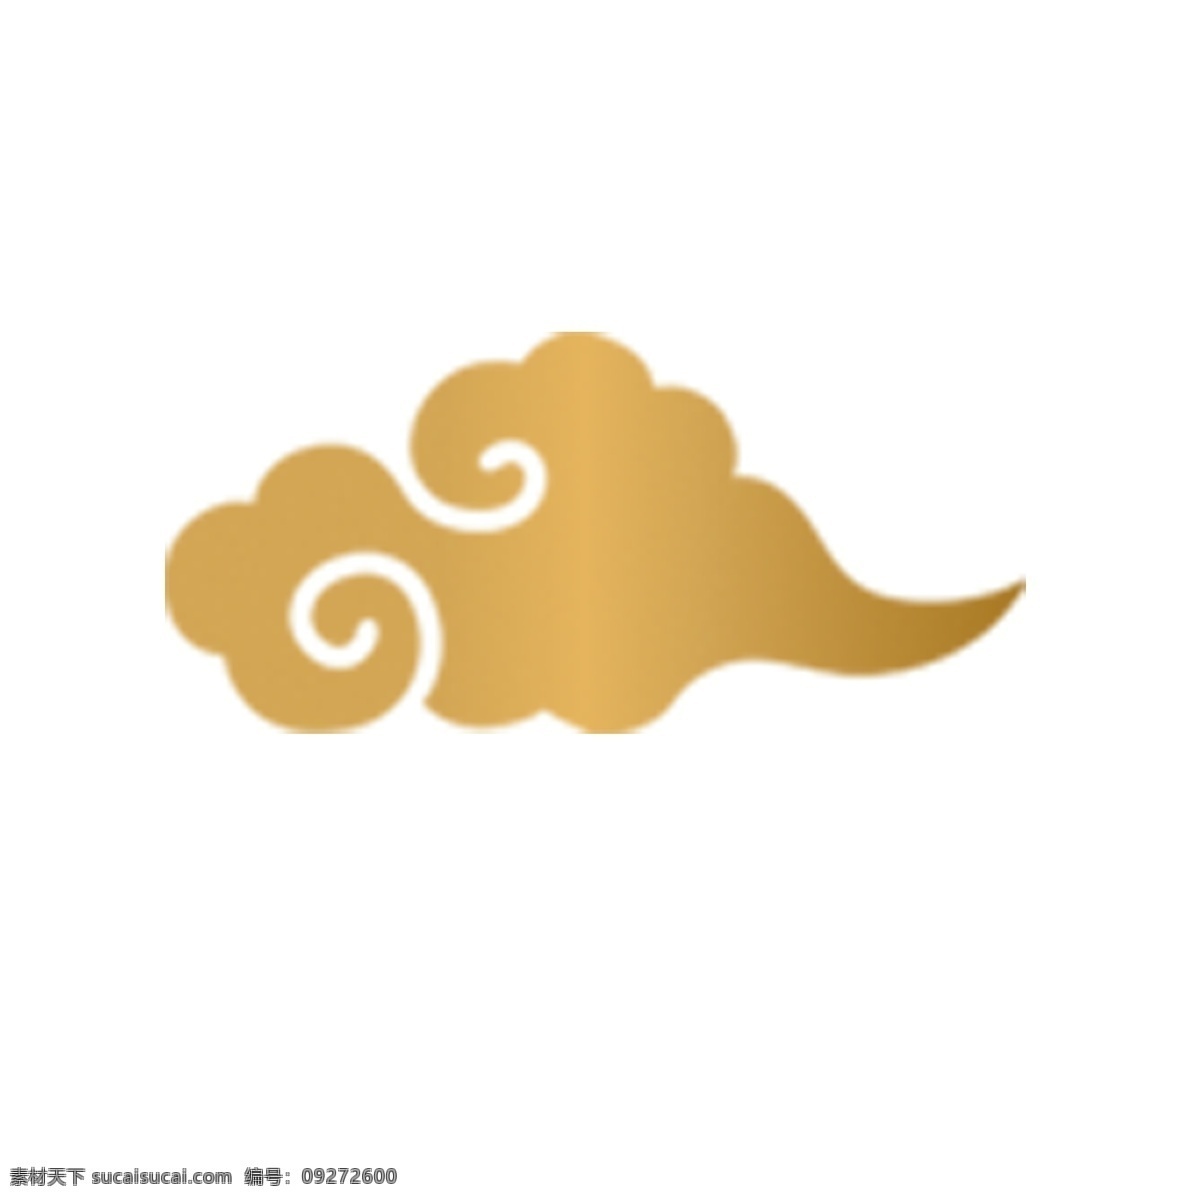 金色 创意 富贵 祥云 元素 漂浮 光泽 弯曲 弧度 云朵